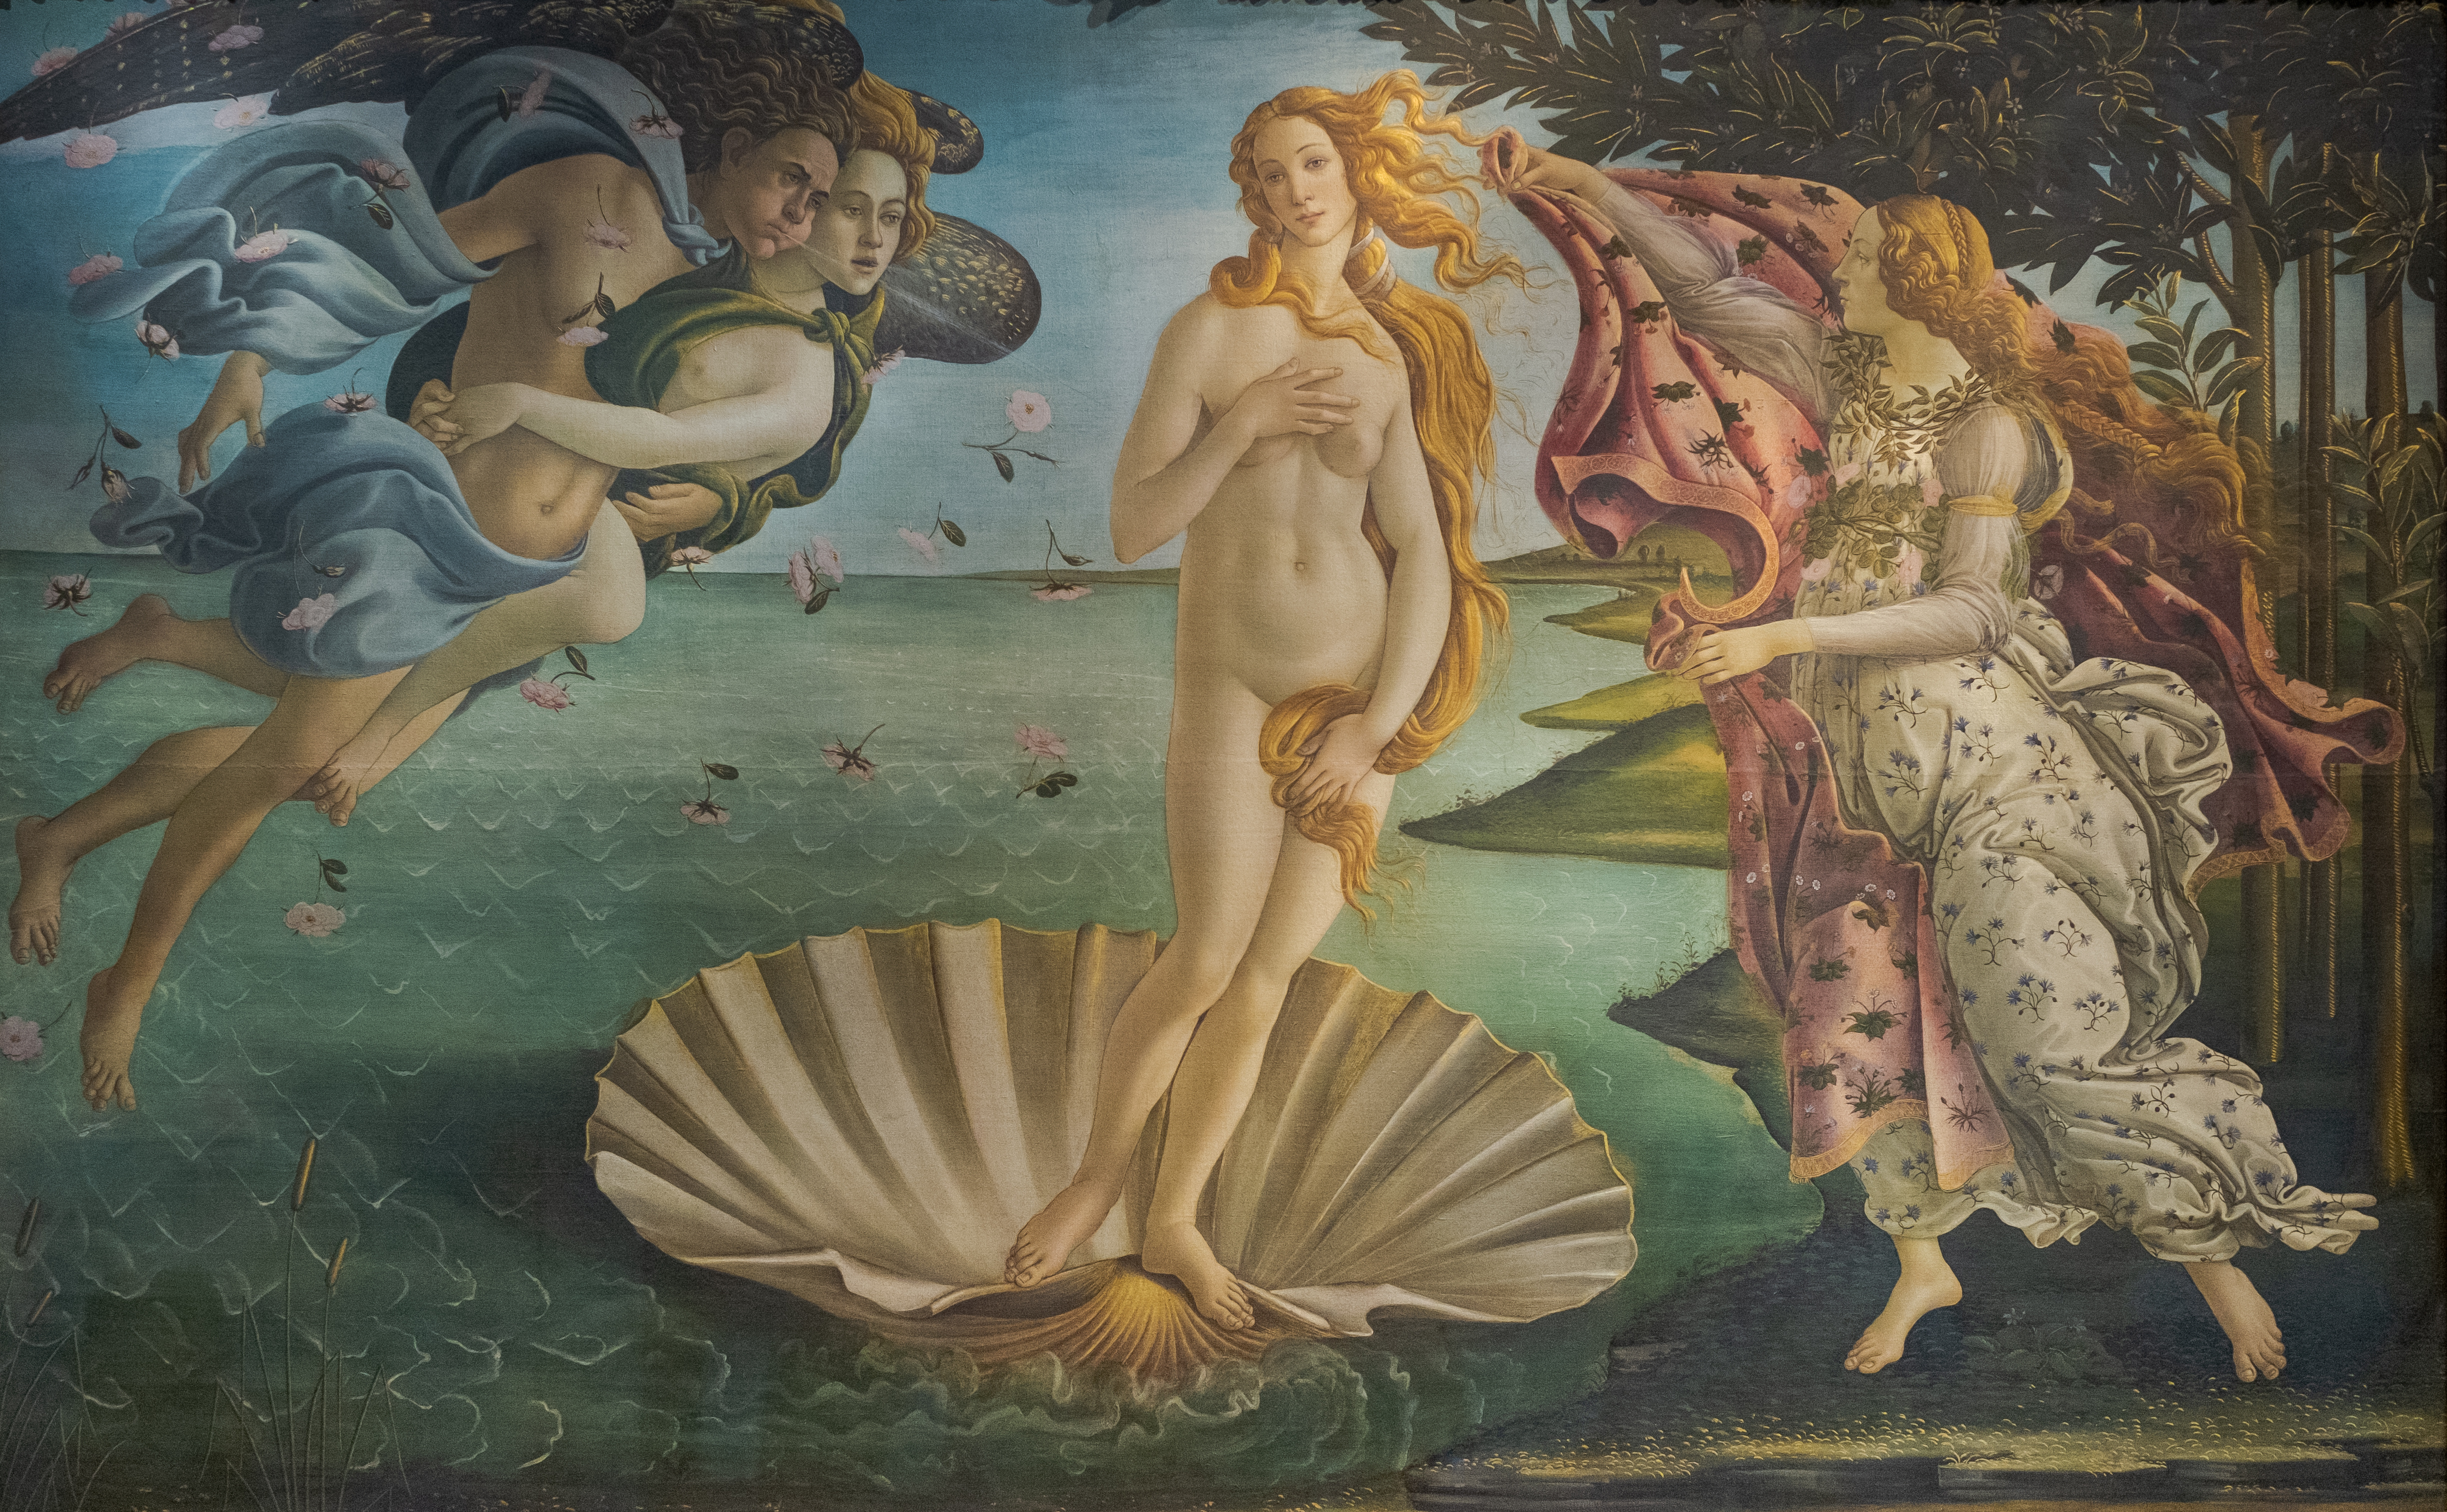 Le peintre Sandro Botticelli qui a réalisé La naissance de Vénus exposée à Florence en Italie, aurait aussi utilisé le jaune d'oeuf dans ses peintures à l'huile. GiorgioMorara, Adobe Stock